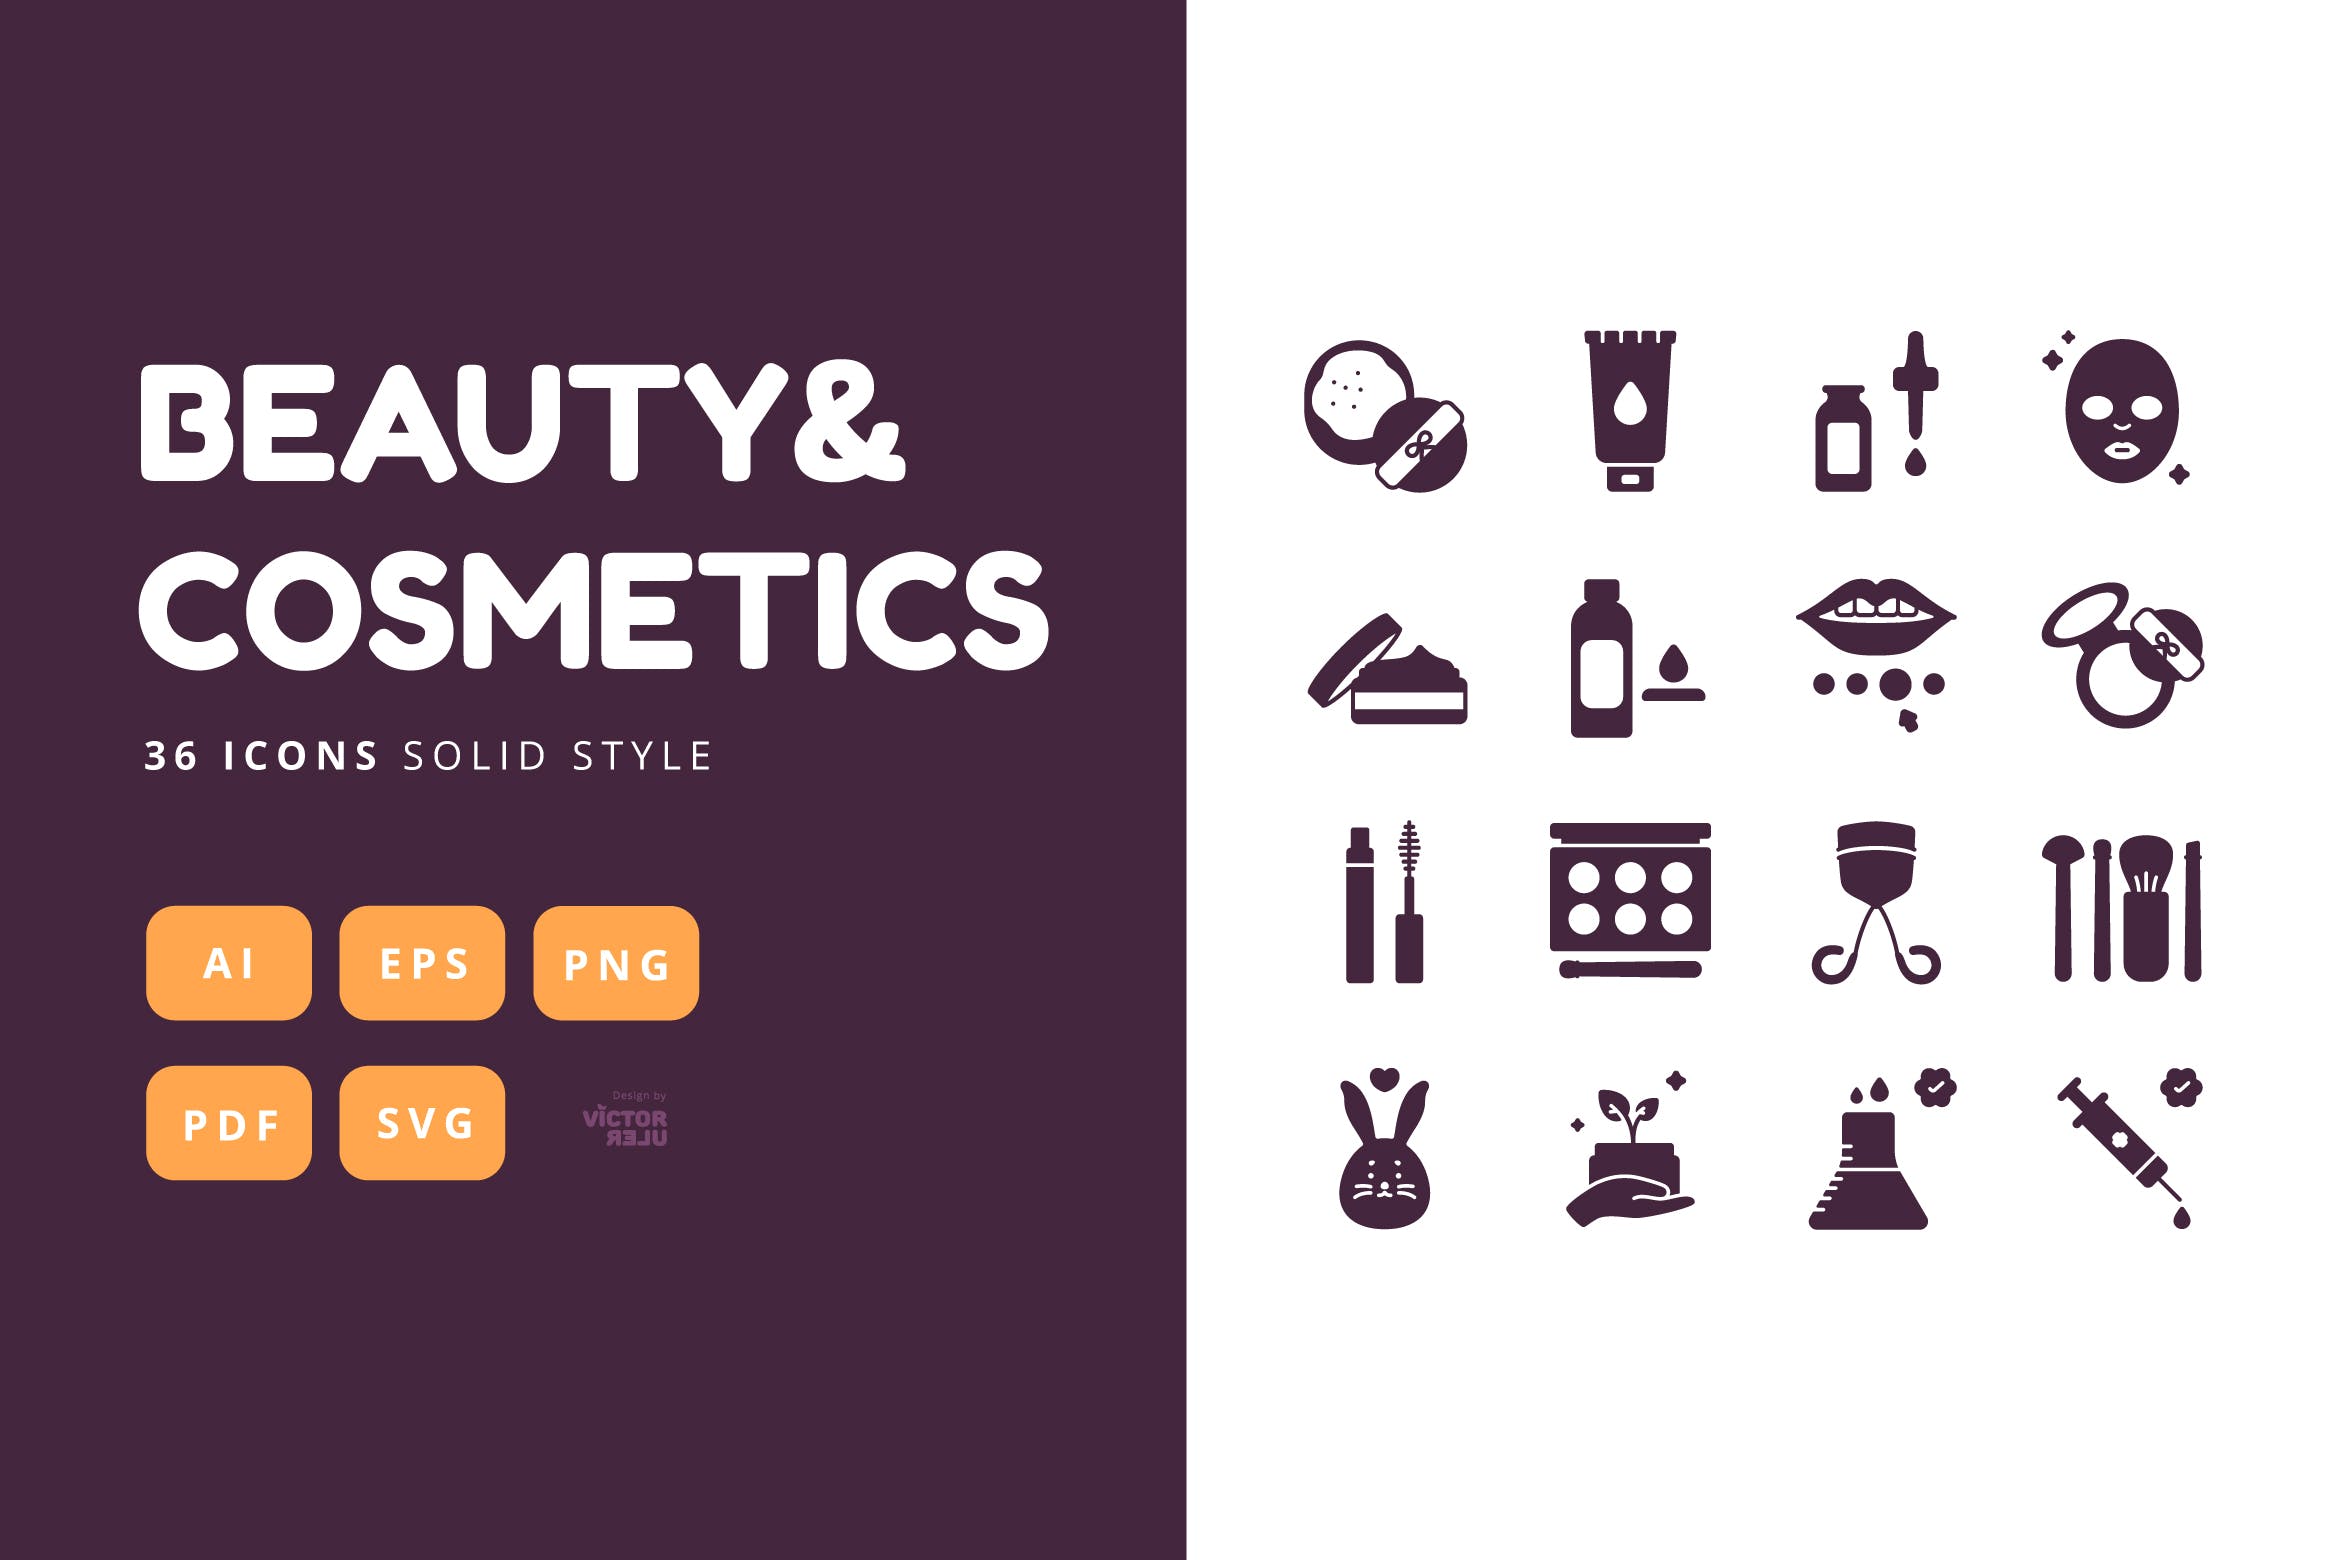 可编辑36枚实体风格美容&化妆品图标素材免费下载